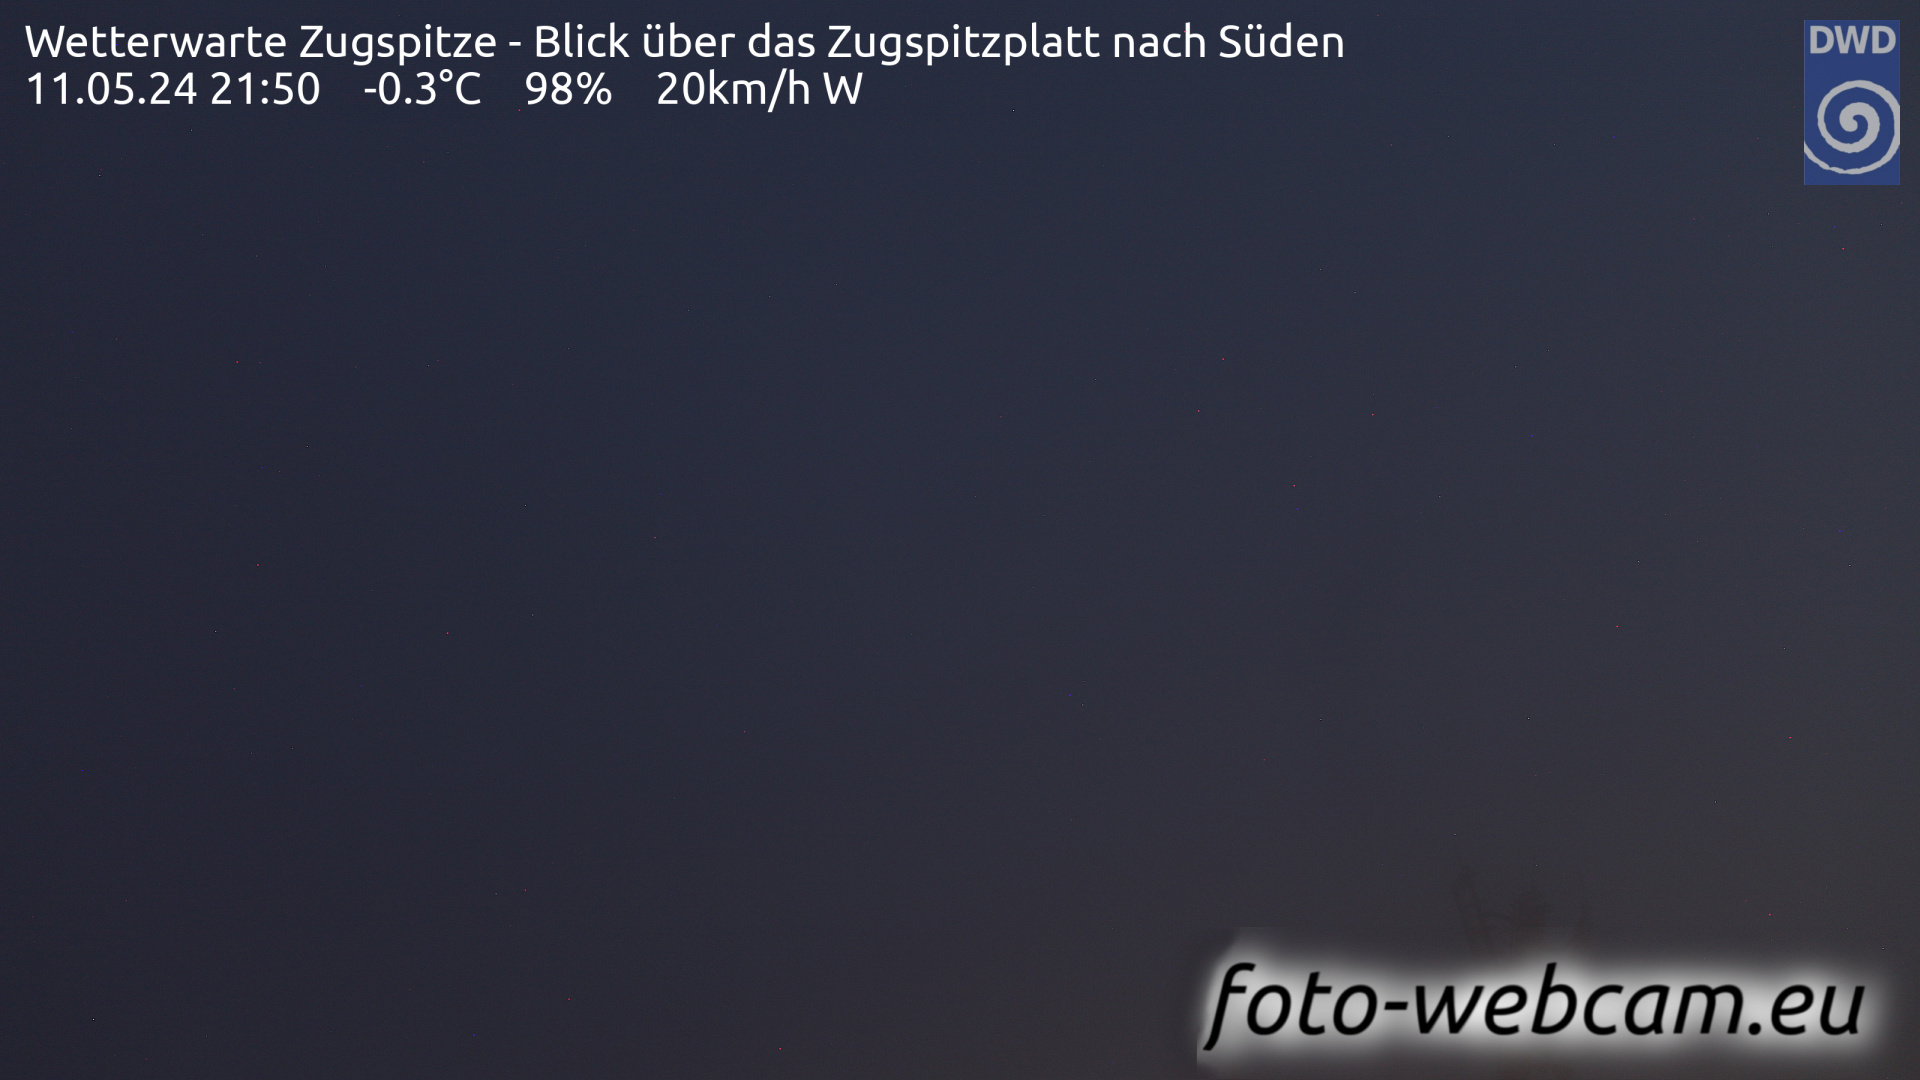 Zugspitze Wed. 21:54